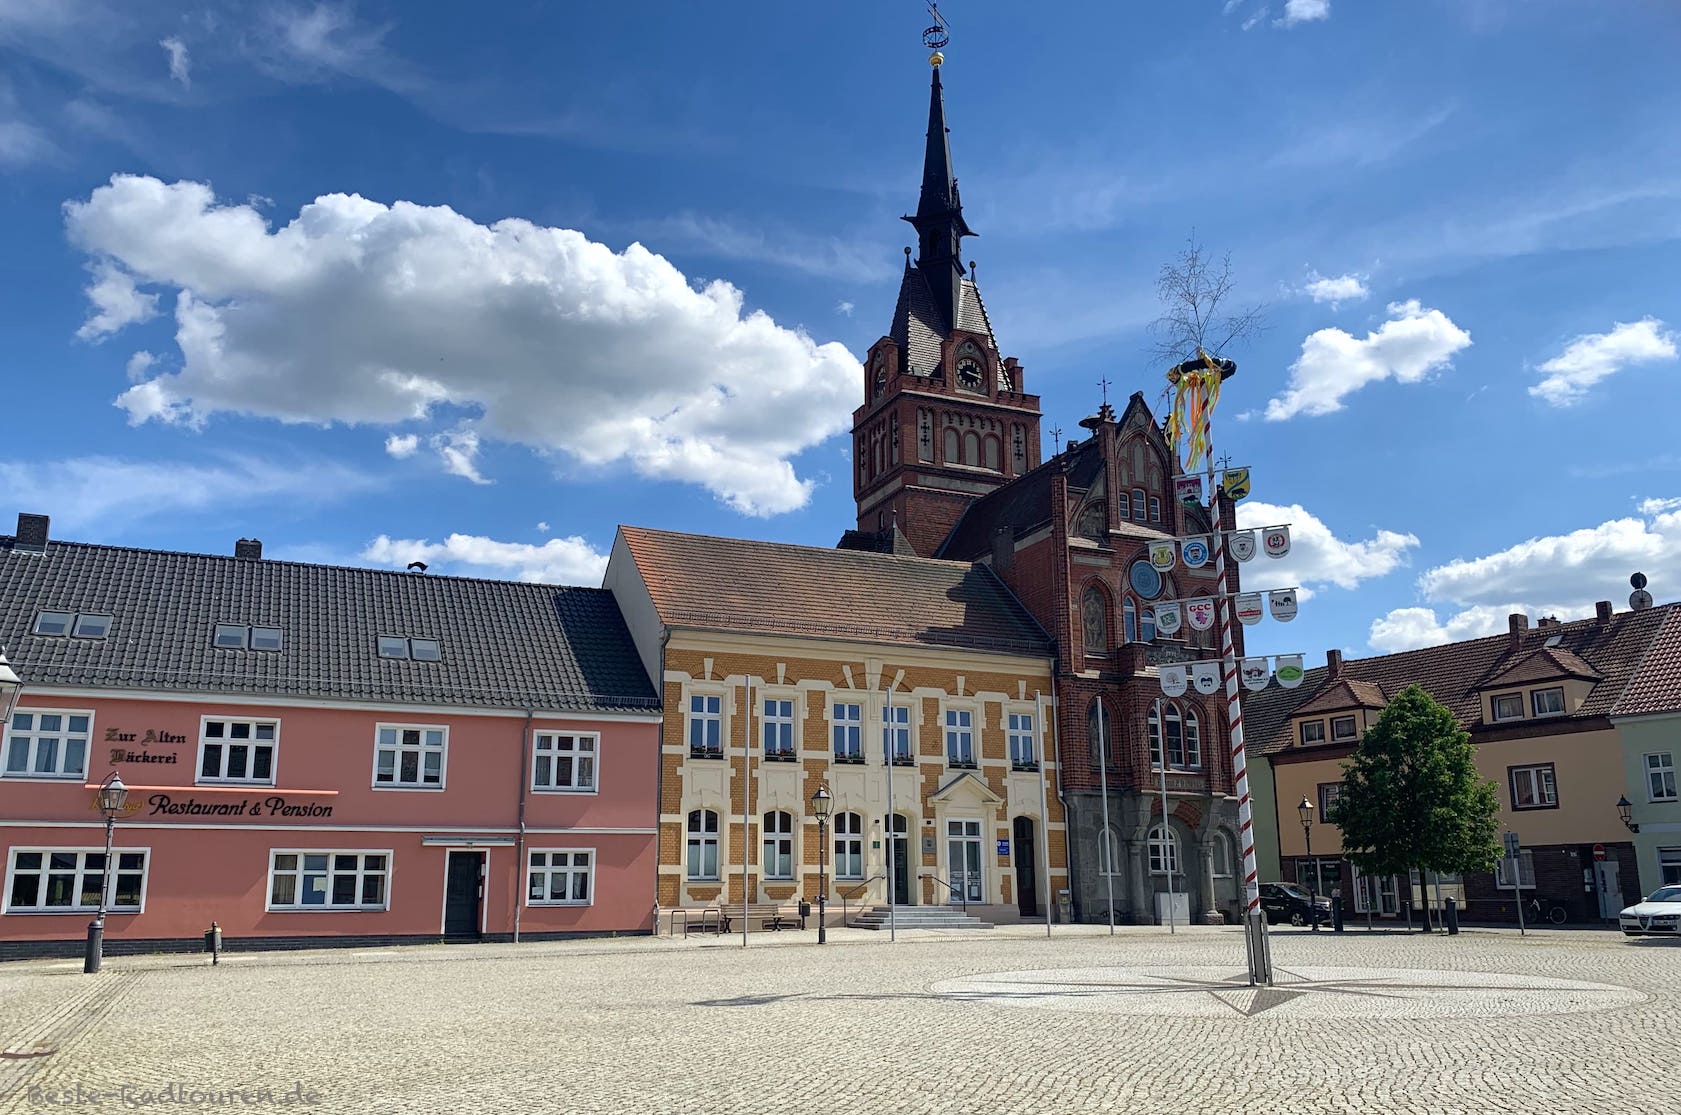 Foto vom Dahme-Radweg aus: Marktplatz von Golssen; Rathaus mit Turm